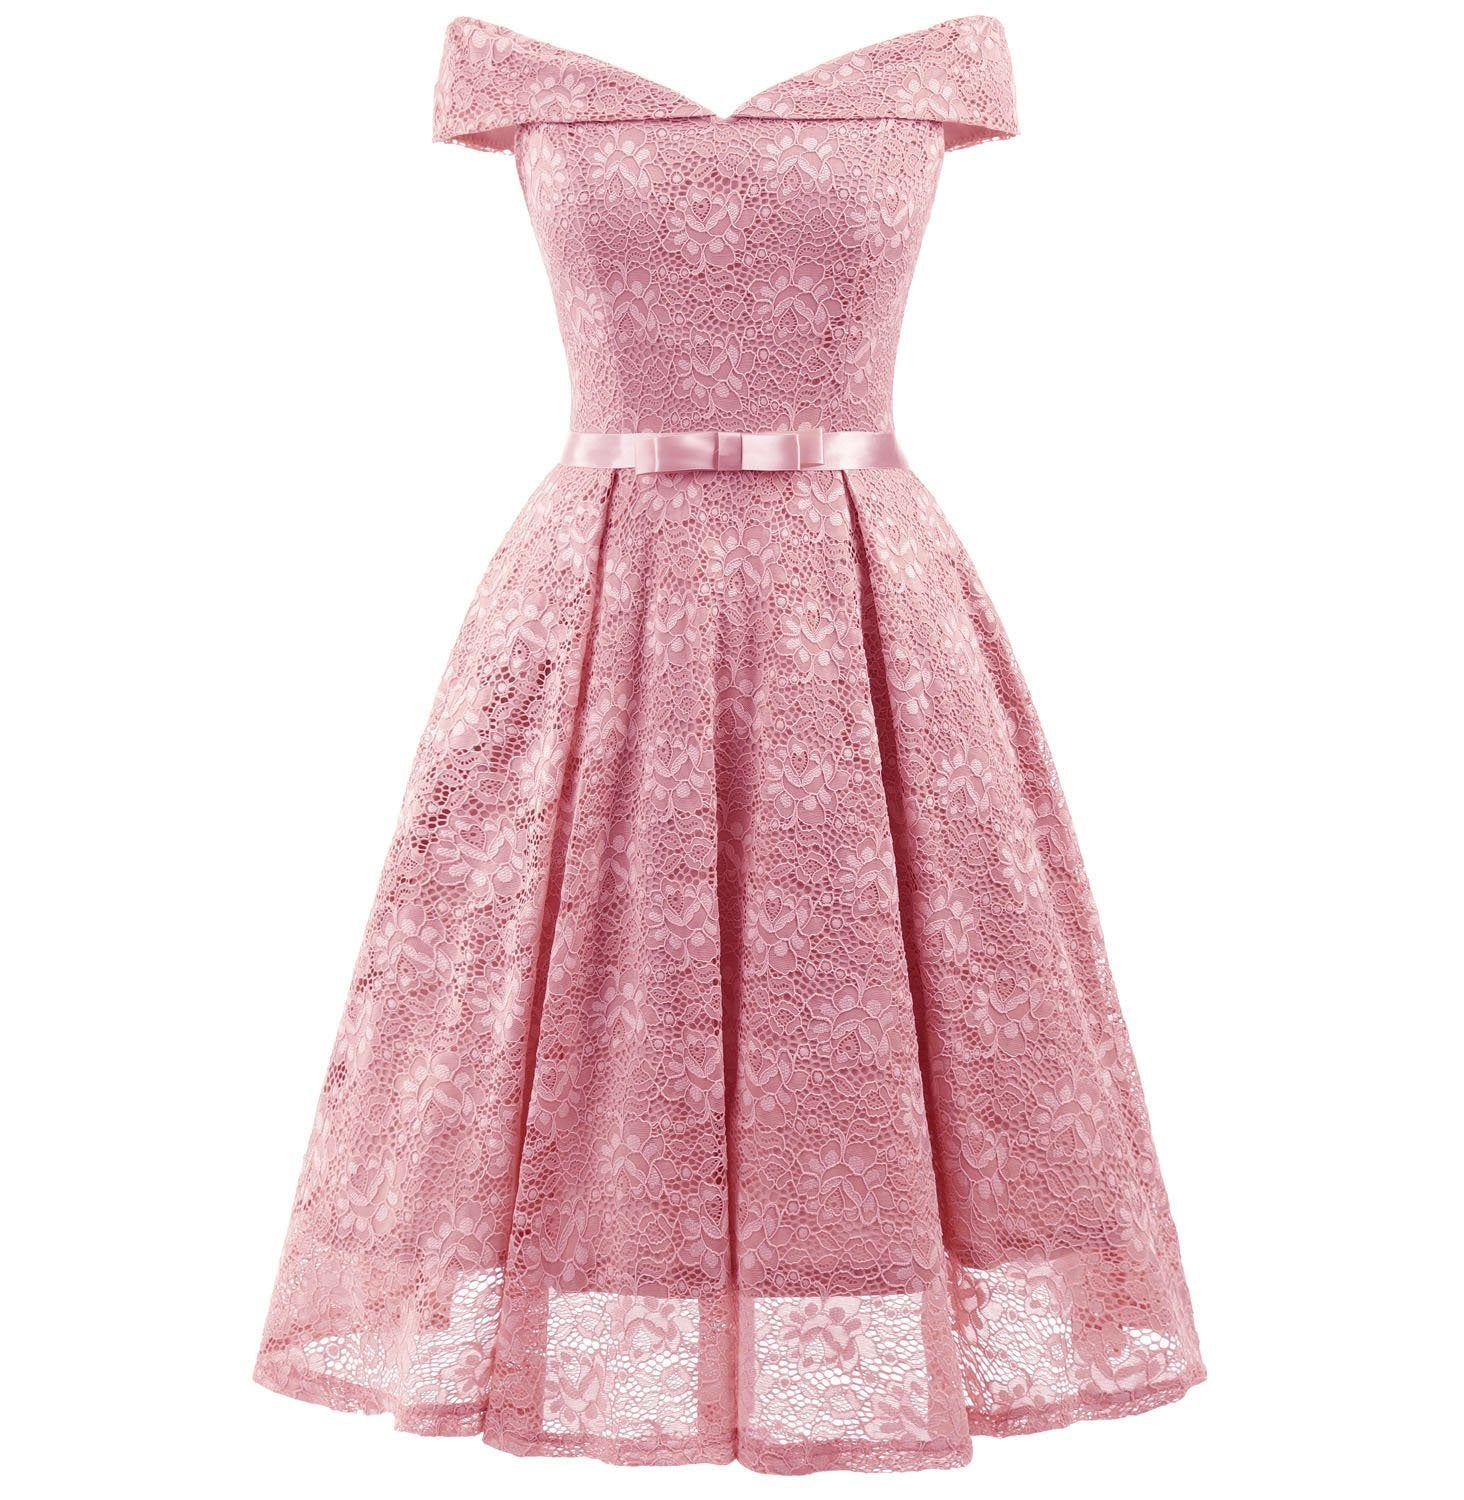 1950s Women's Fashion Vintage Dresses Pink Off the Shoulder Dress